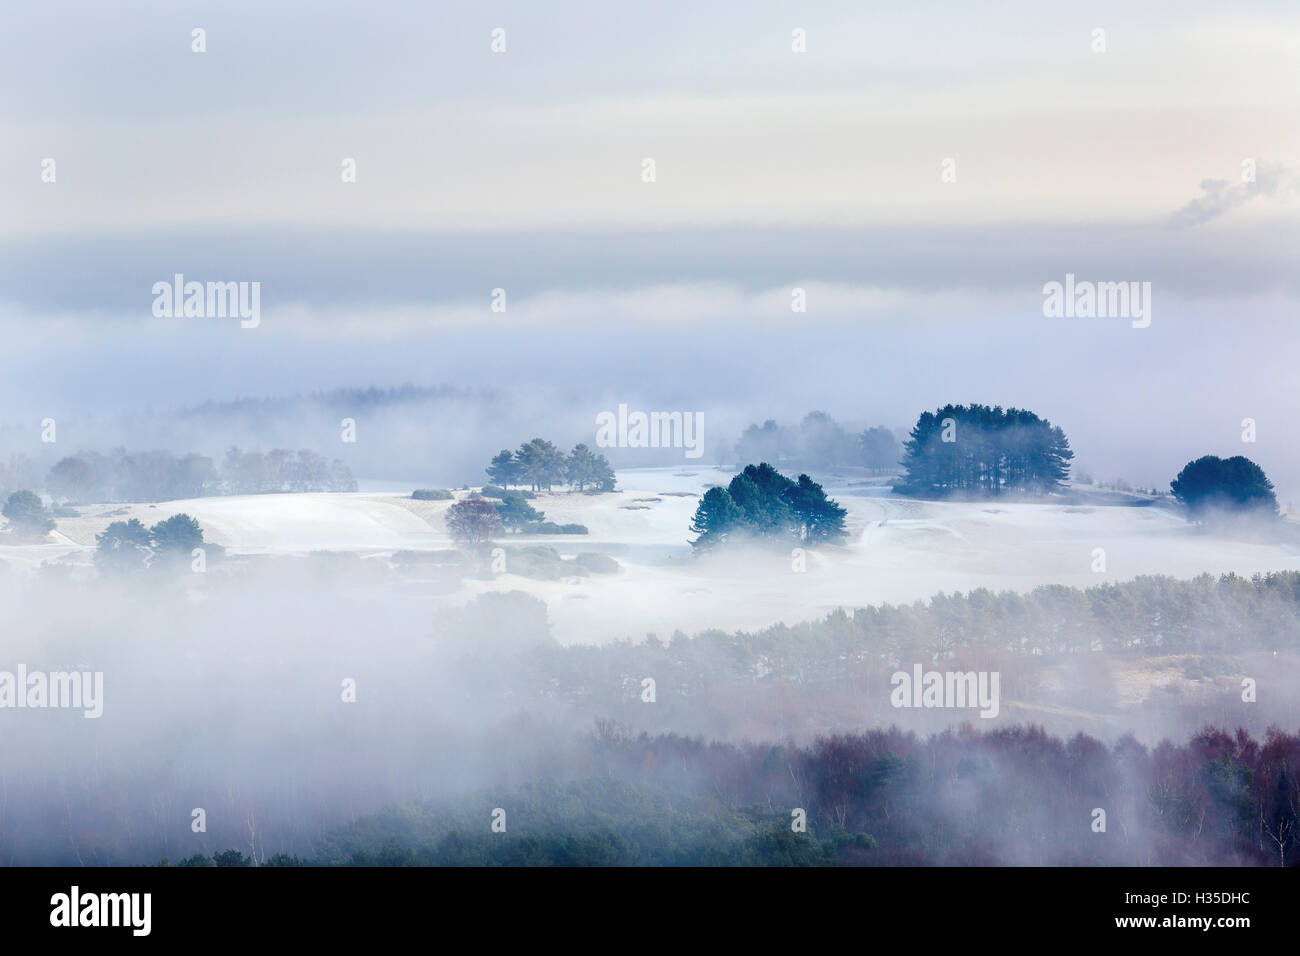 Brouillard d'hiver clearing pour révéler le givre et la neige, l'ensemble du paysage forestier Delamere, Cheshire, England, UK Banque D'Images